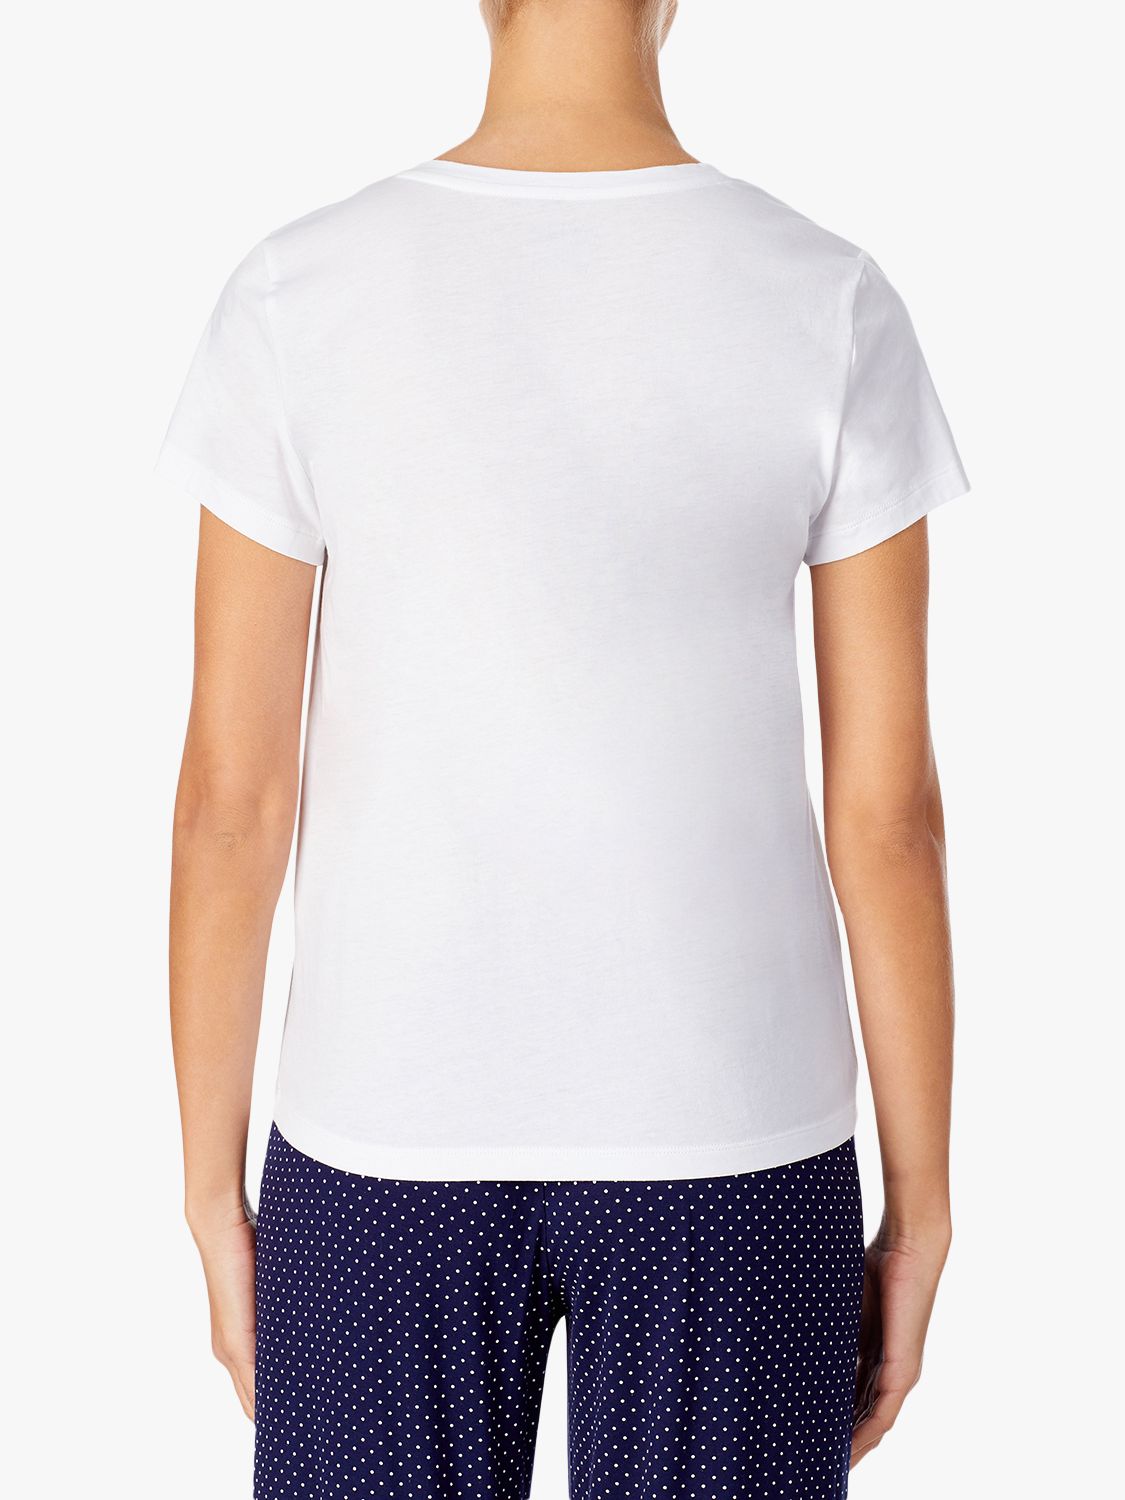 Lauren Ralph Lauren V-Neck Sleep T-Shirt, White, S